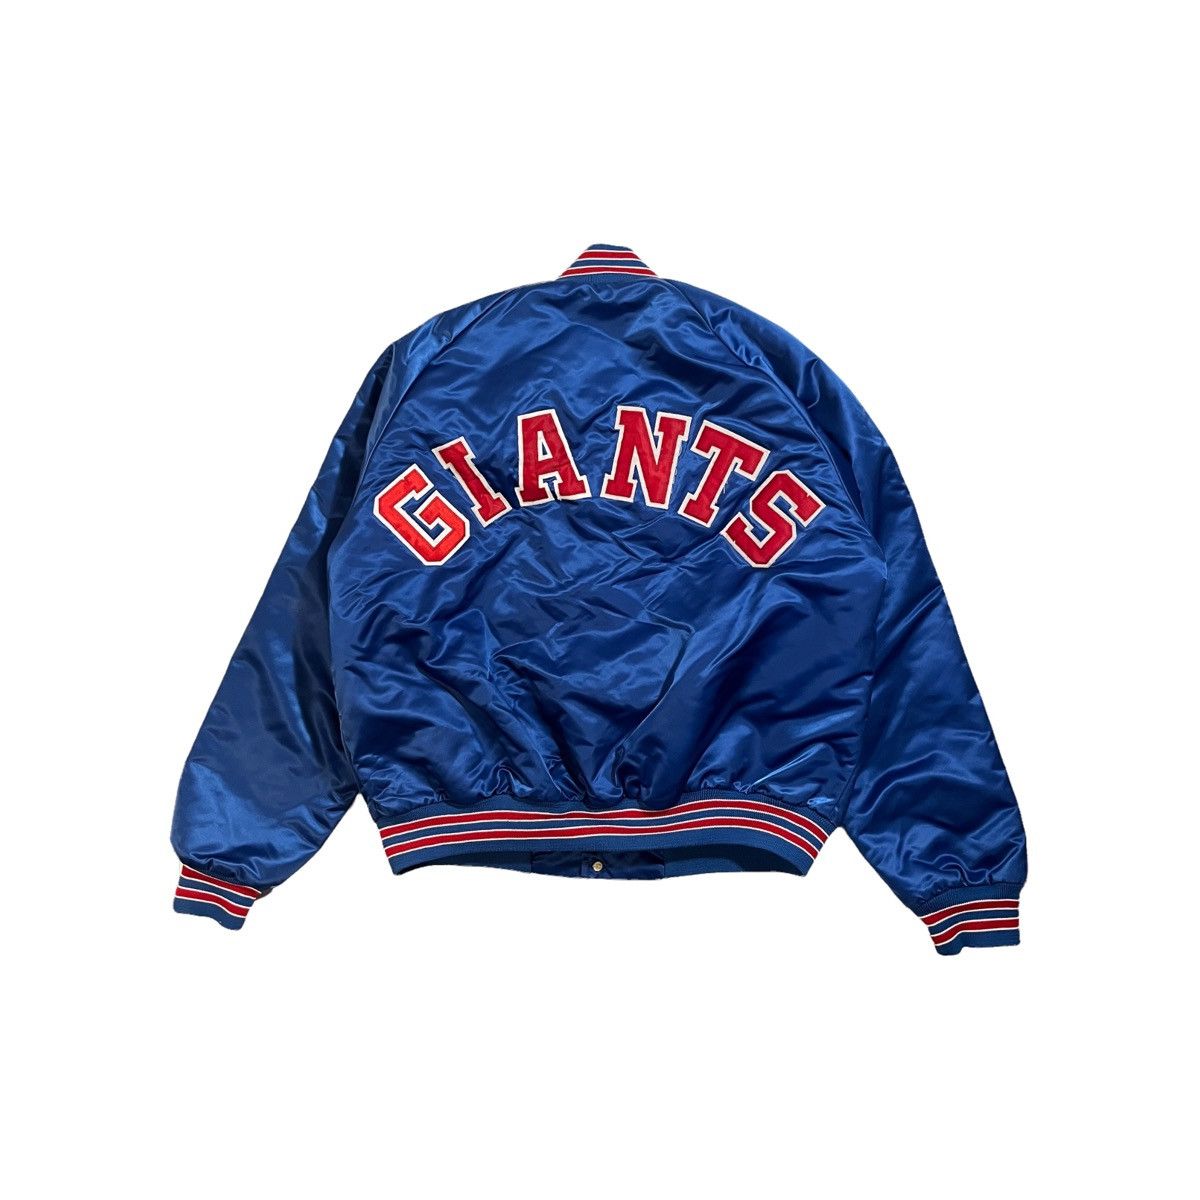 Vintage SF Giants Black Chalkline Satin Jacket - 5 Star Vintage